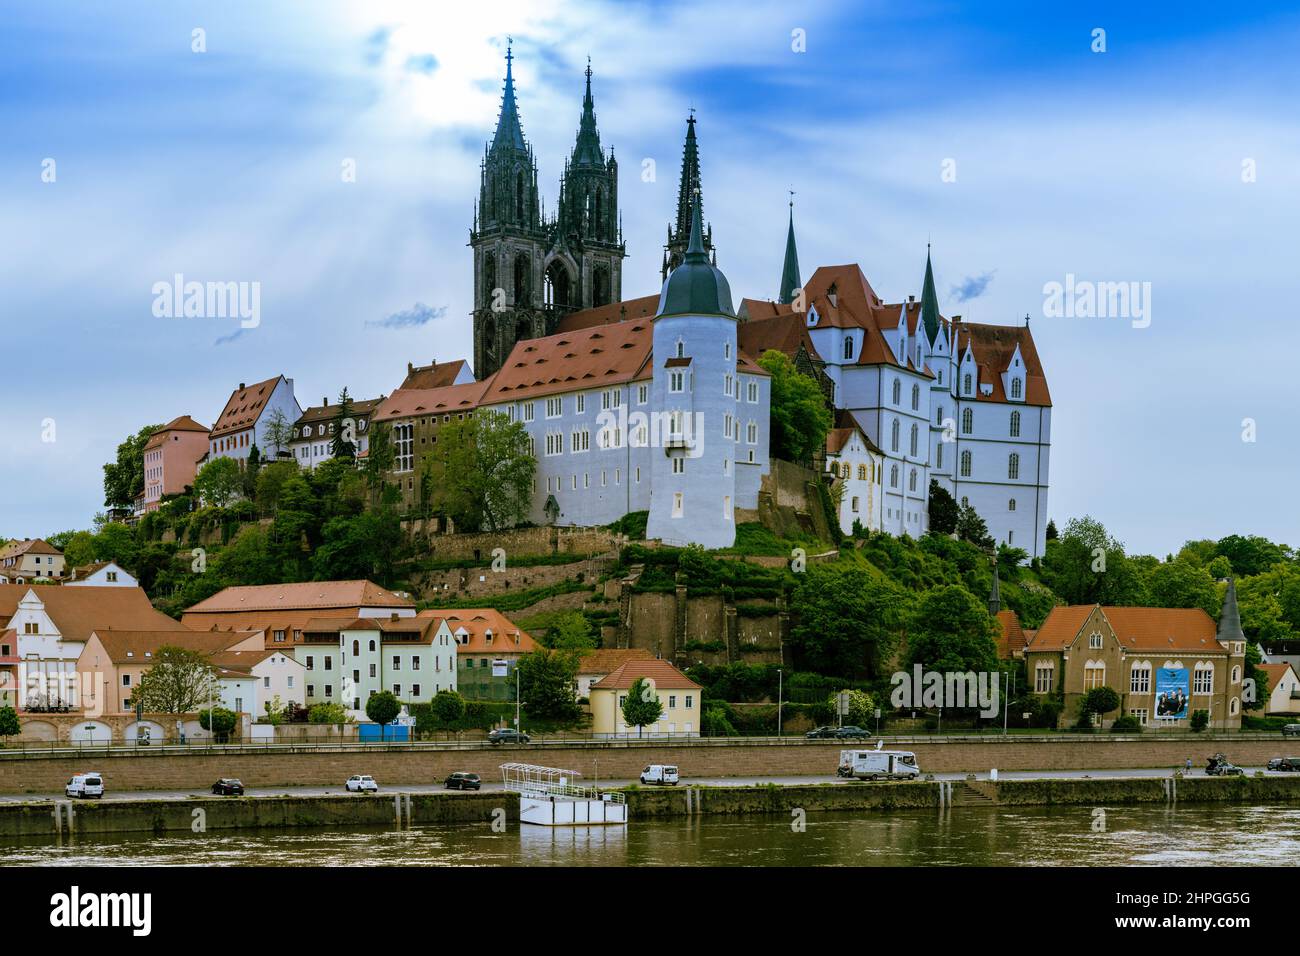 Die Albrechtsburg bei Meissen, eine der ältesten Burgen Deutschlands. Stock Photo